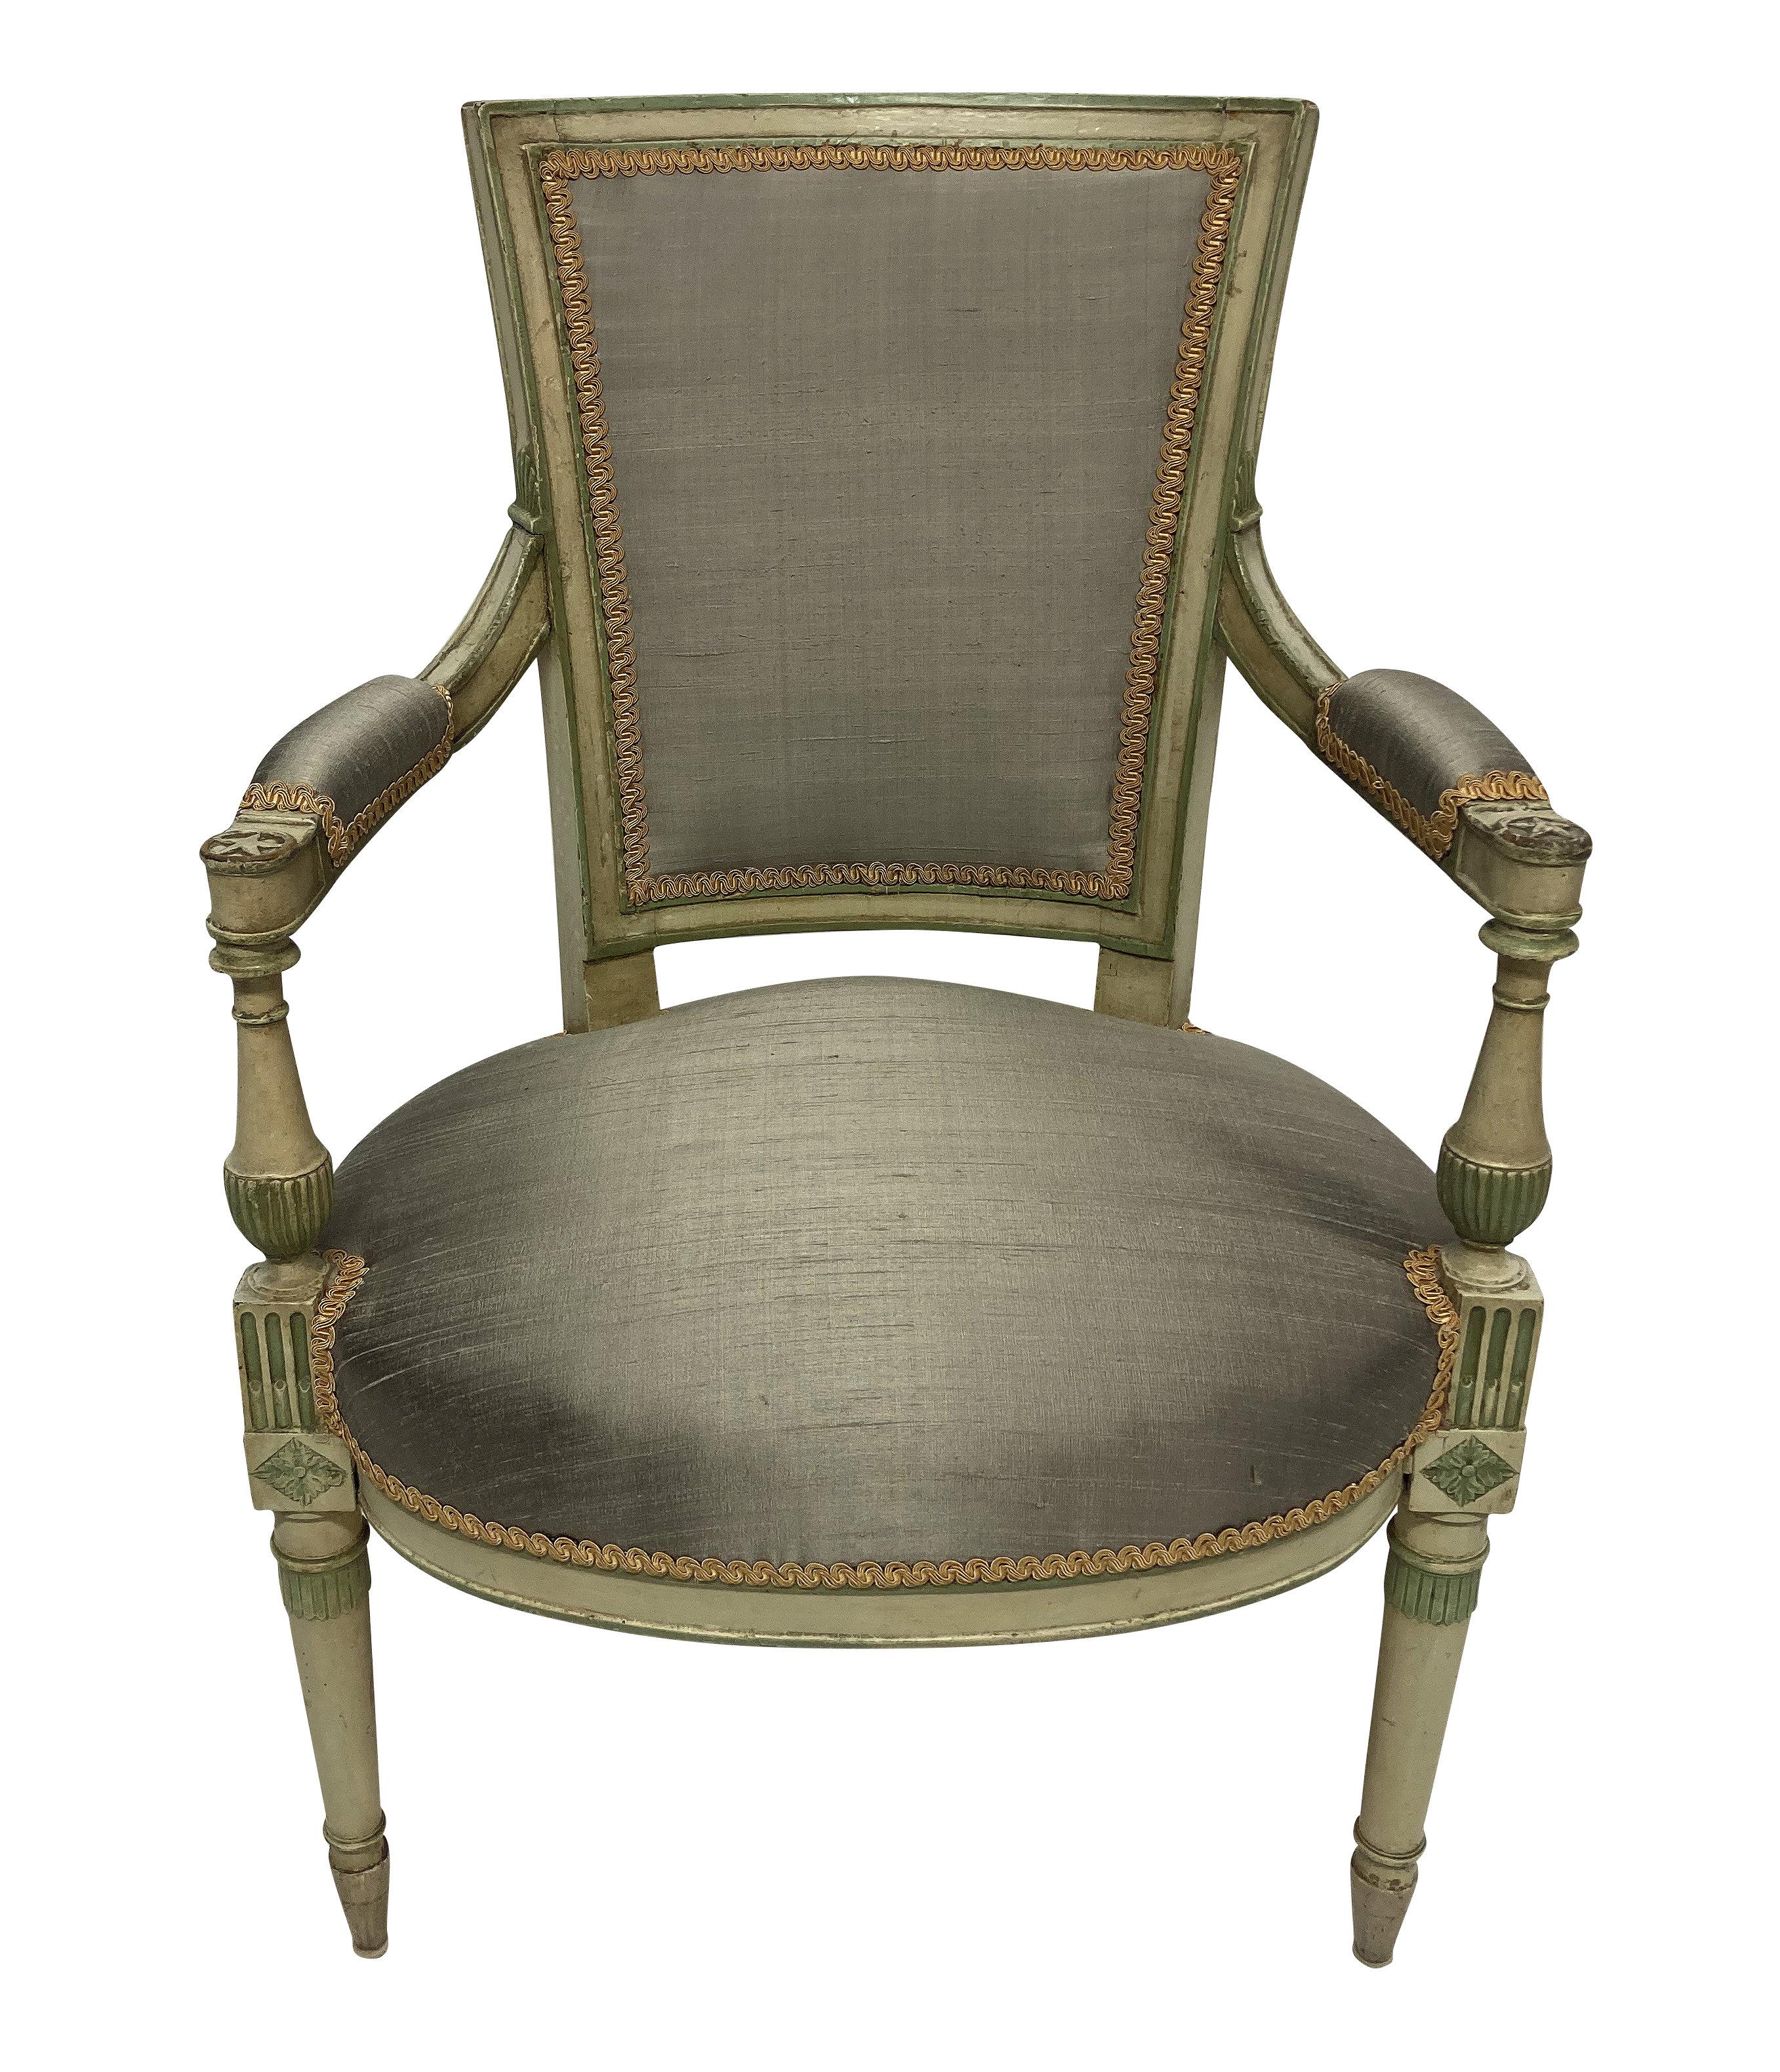 Zwei bemalte Sessel im französischen Directoire-Stil, neu gepolstert mit steinfarbener, strukturierter Seide mit goldener Schnörkelpaspel.